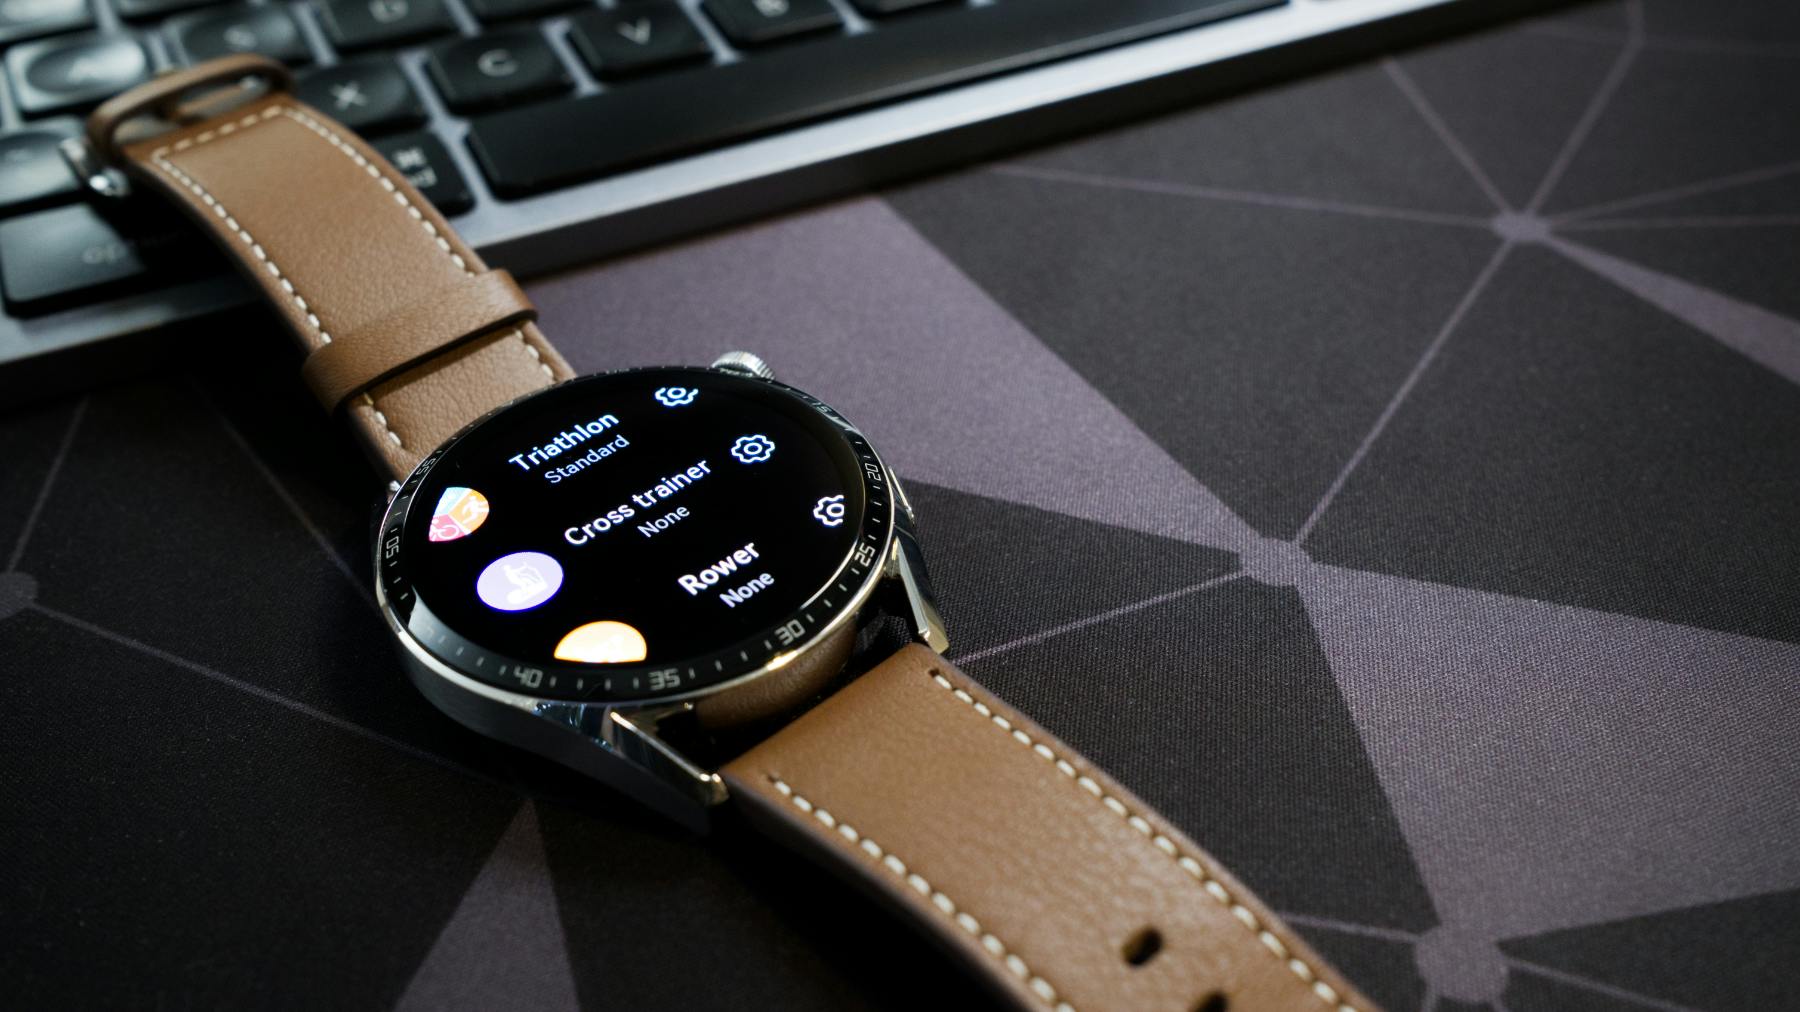 Big screen, big battery: Huawei Watch GT 3 review